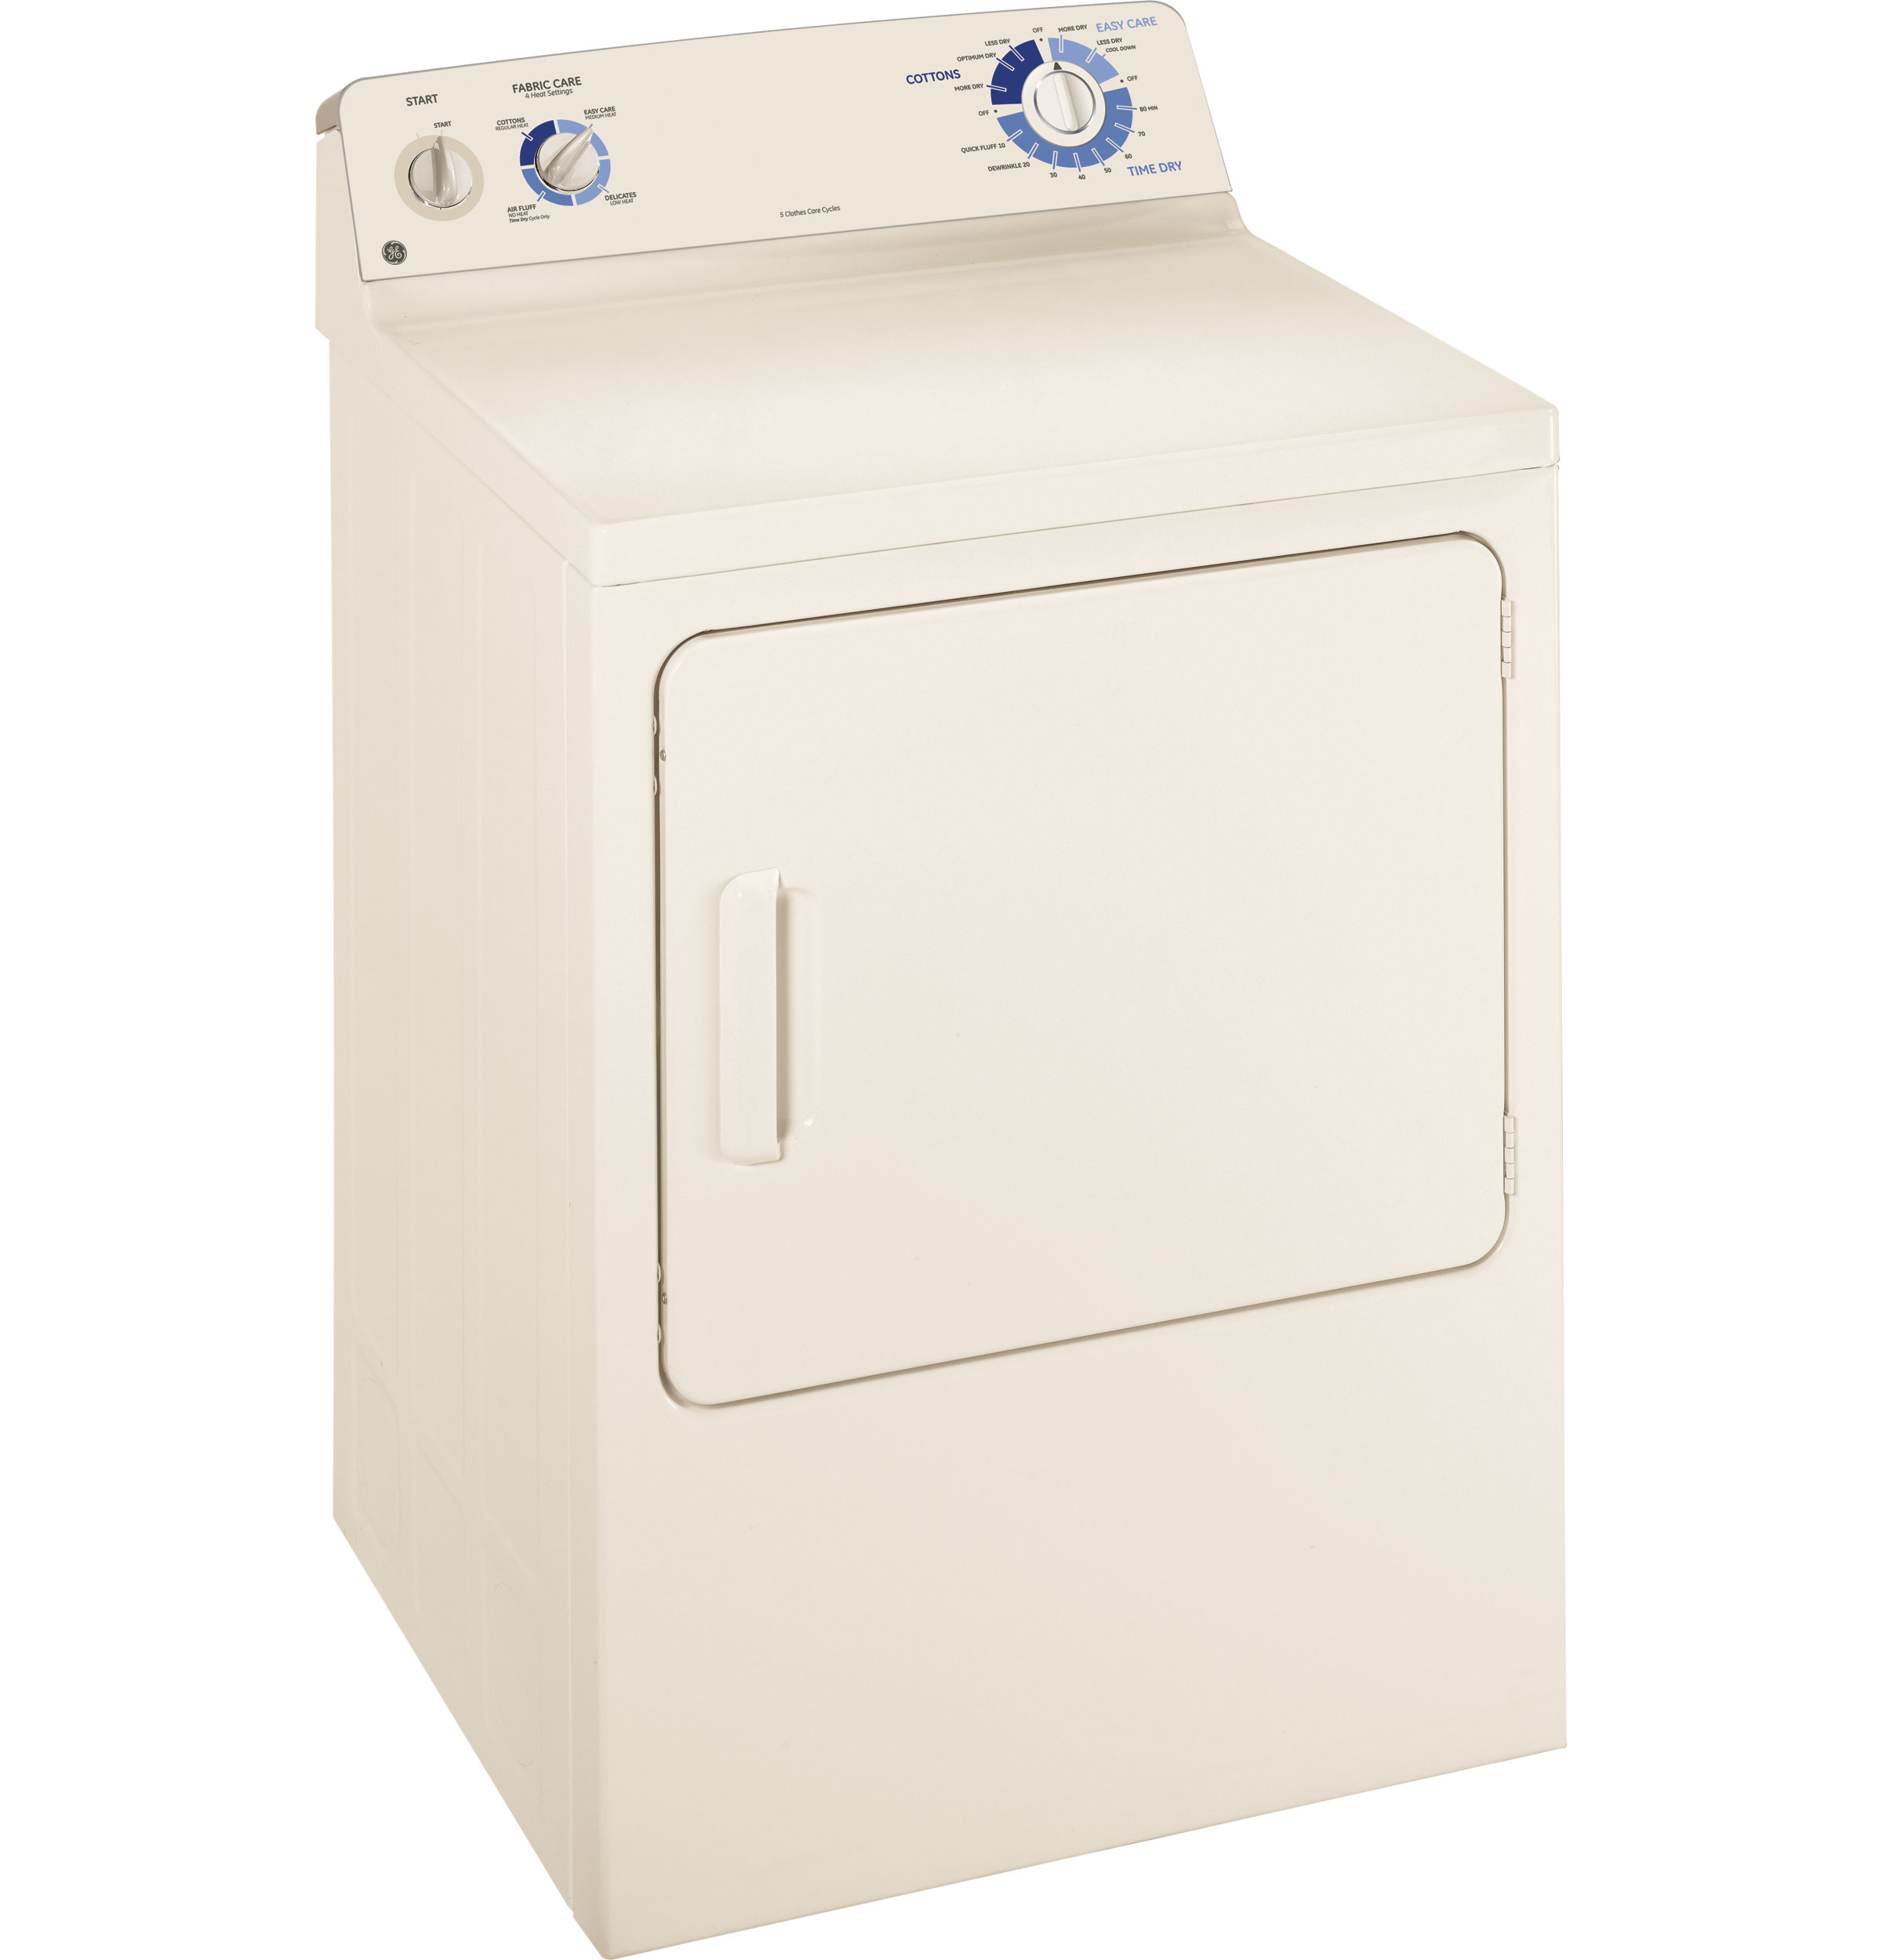 GE® 6.0 cu. ft. capacity DuraDrum™ gas dryer